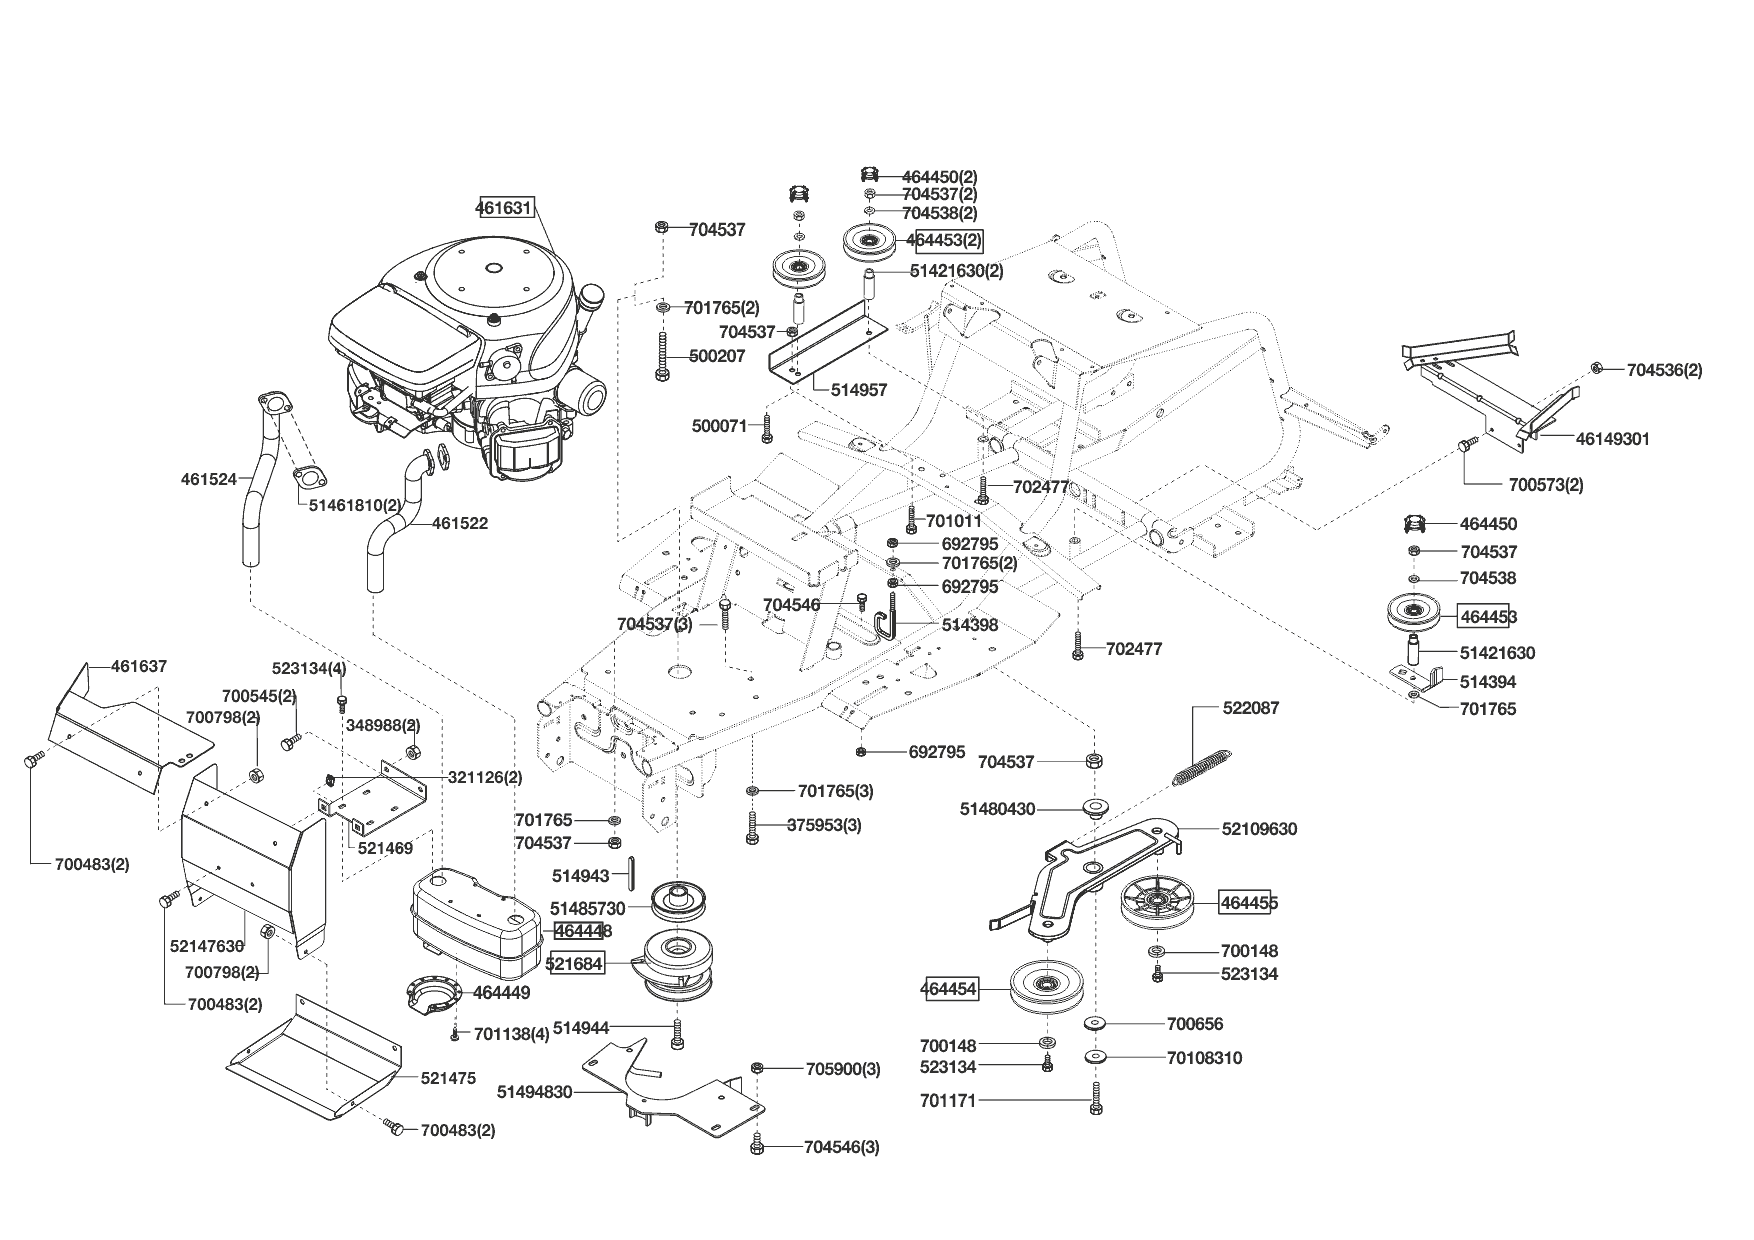 Ersatzteile und Zeichnung von Powerline für Rasentraktor T 16-92 HD-H